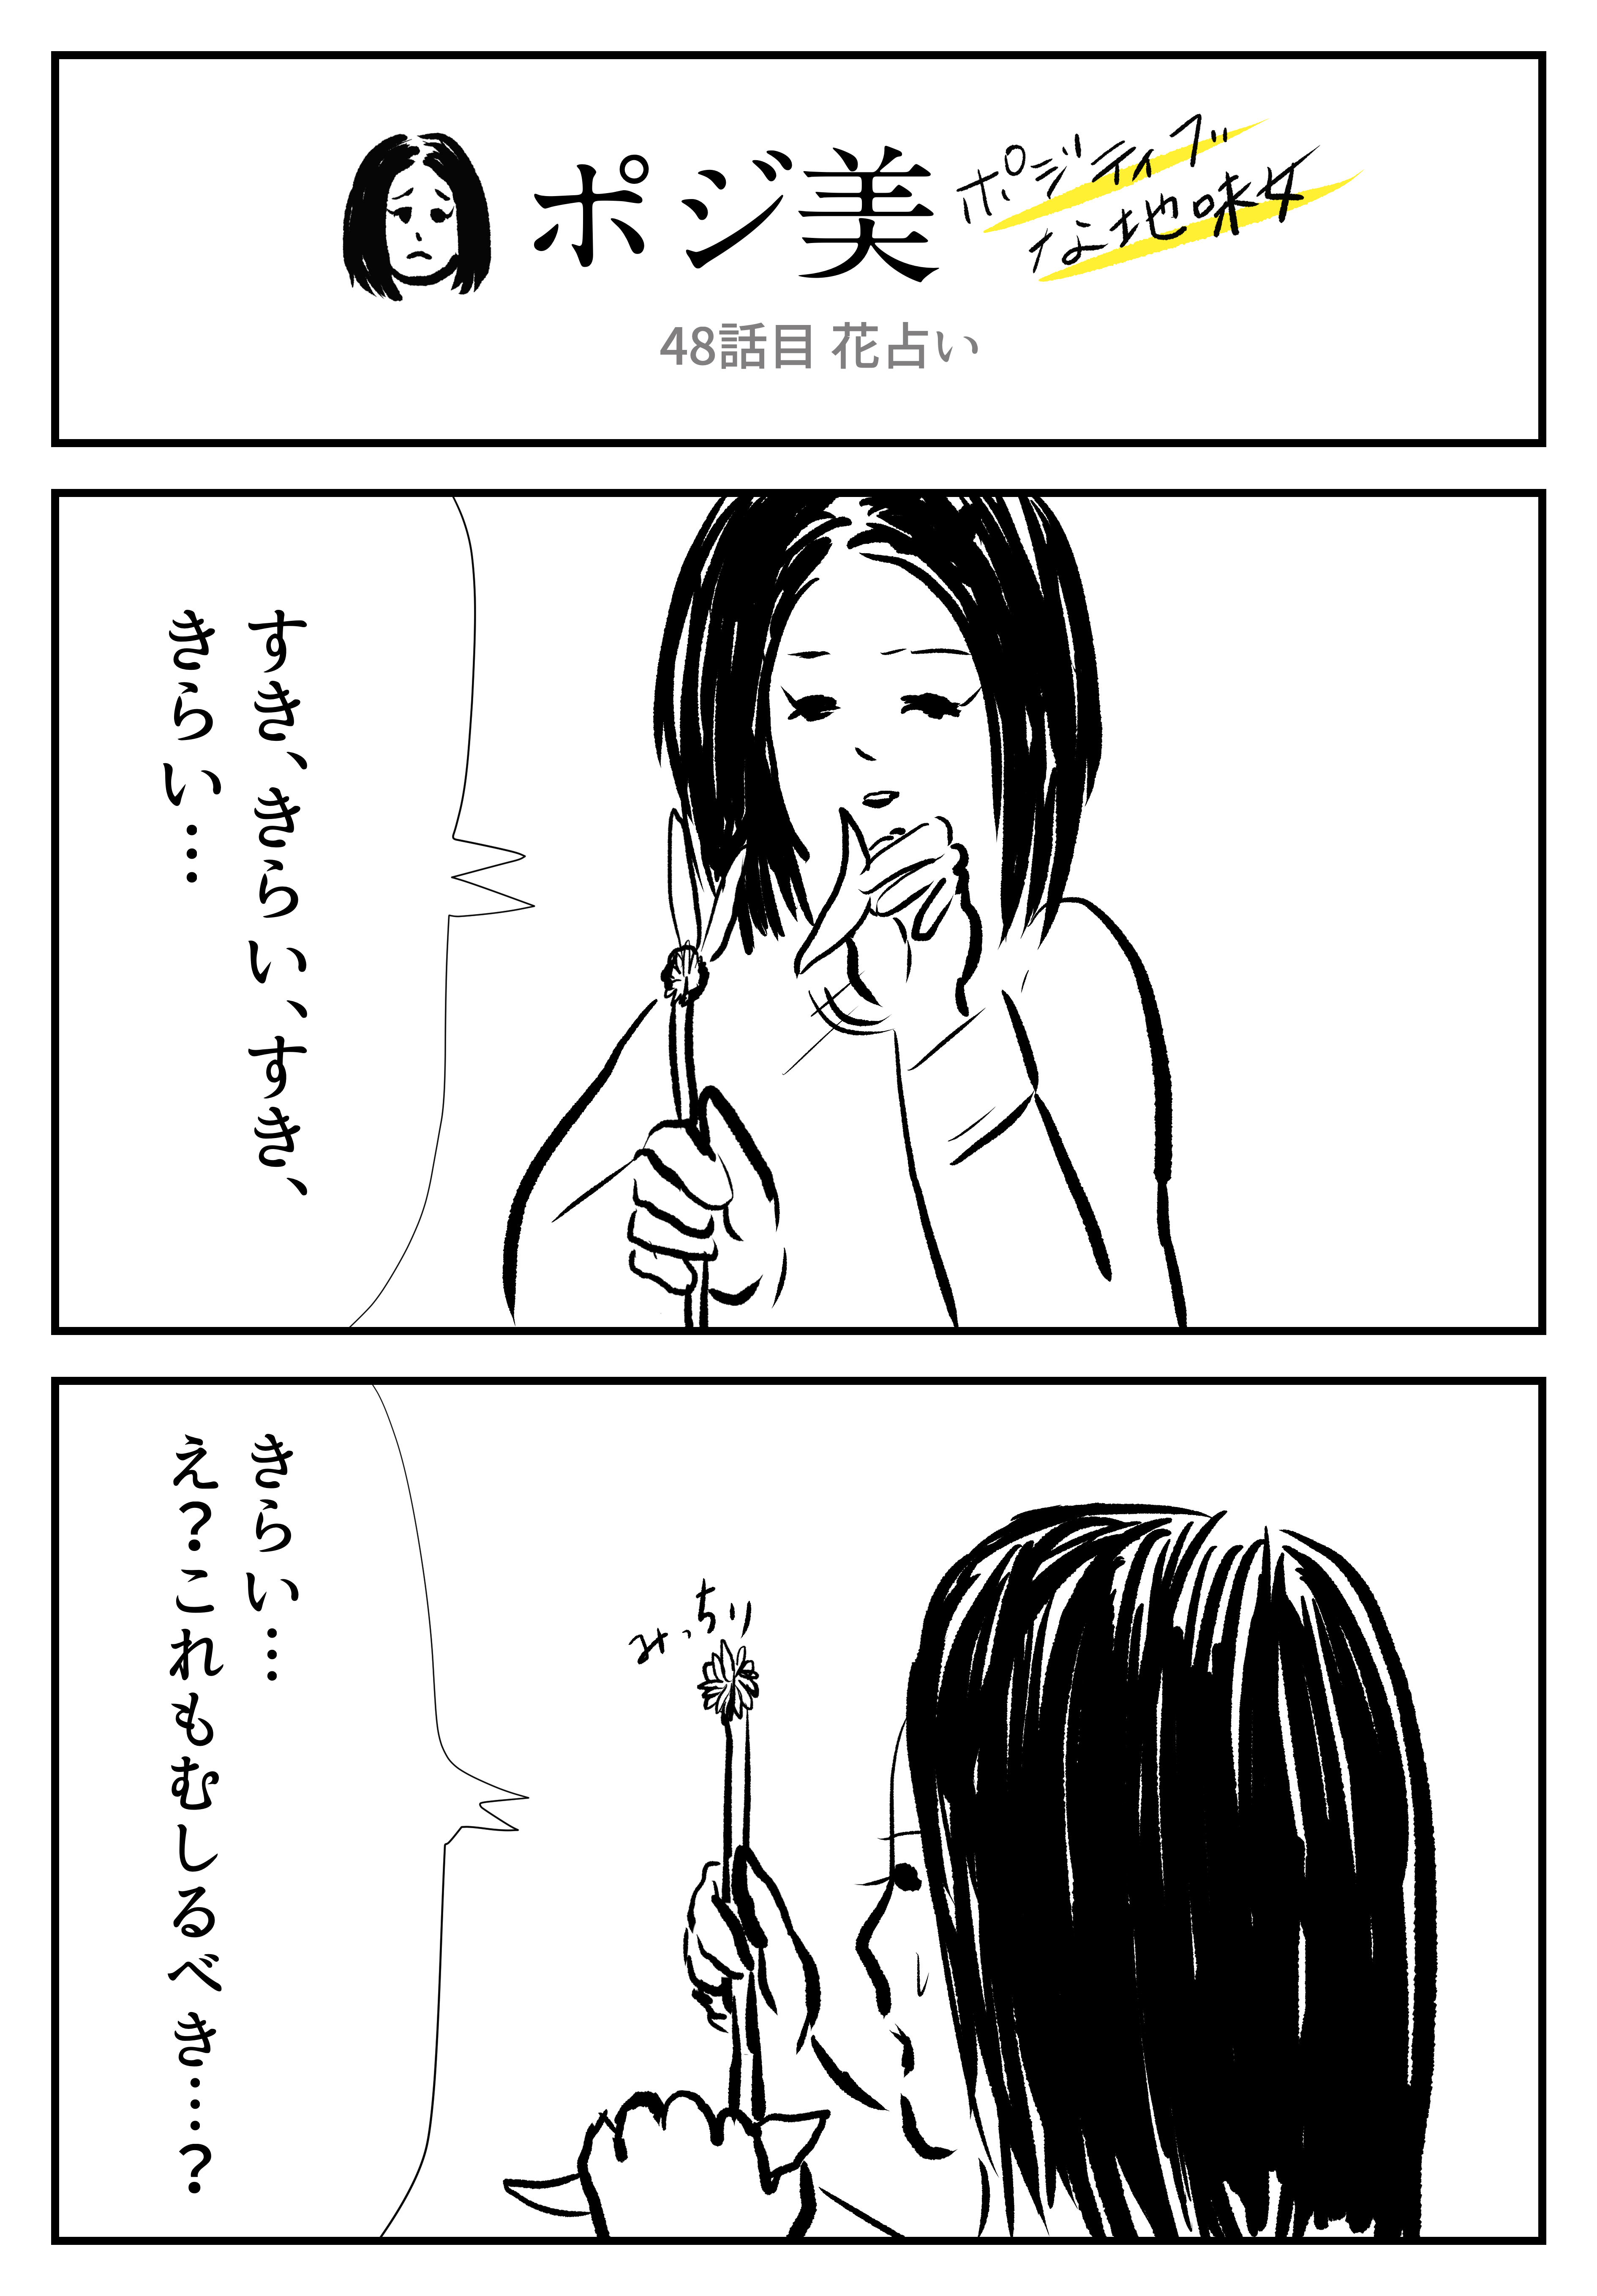 2コマ ポジ美 48話目 花占い ロケットニュース24